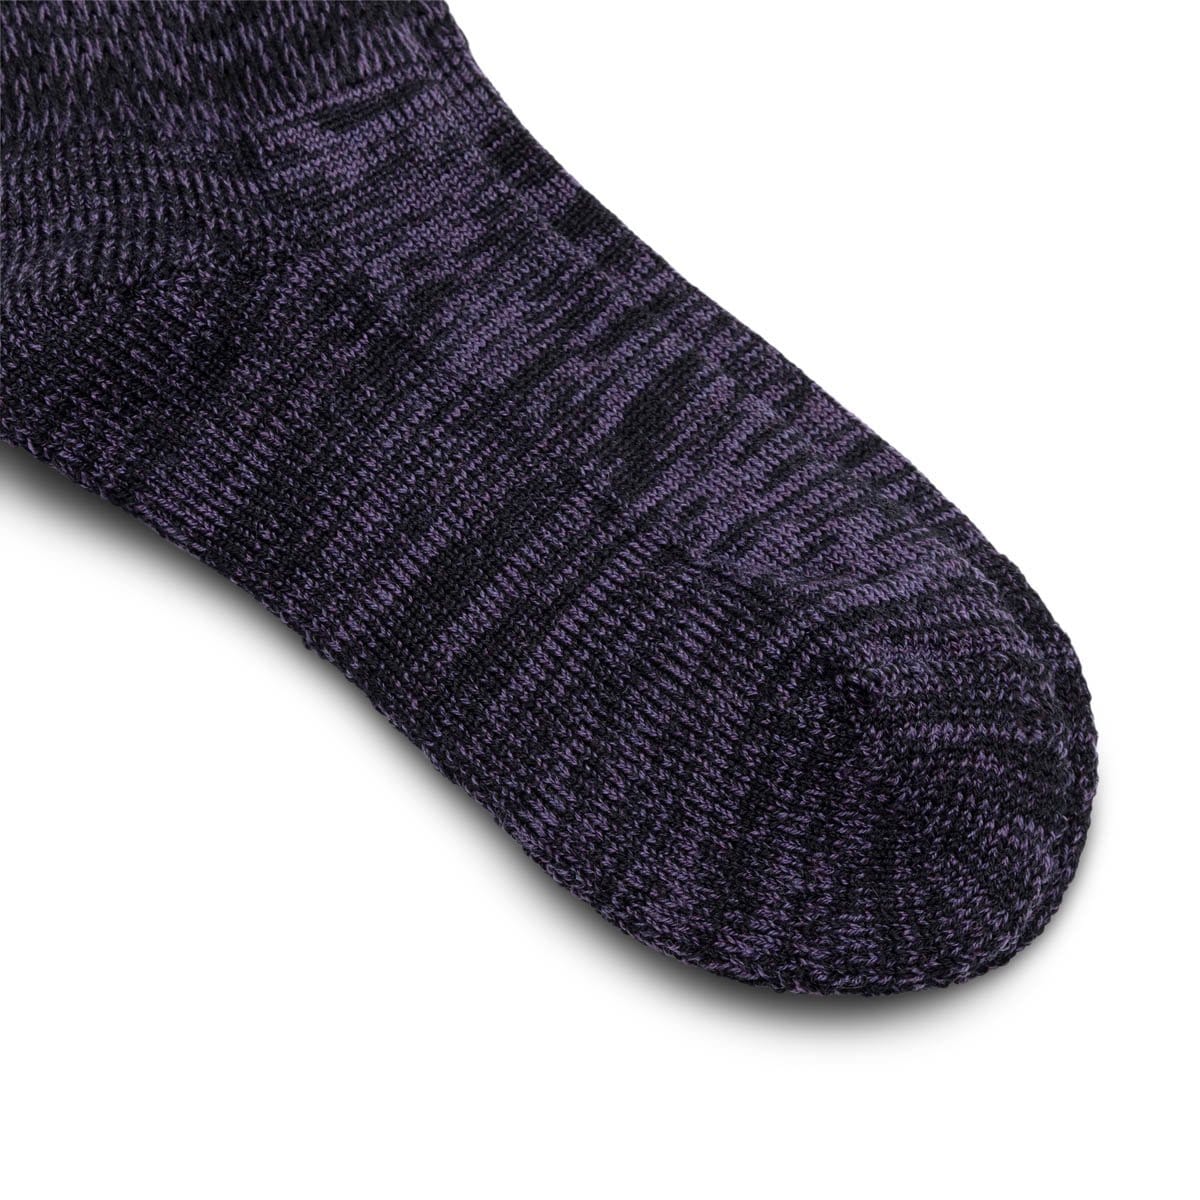 Needles Socks PURPLE / M MERINO PILE SOCKS